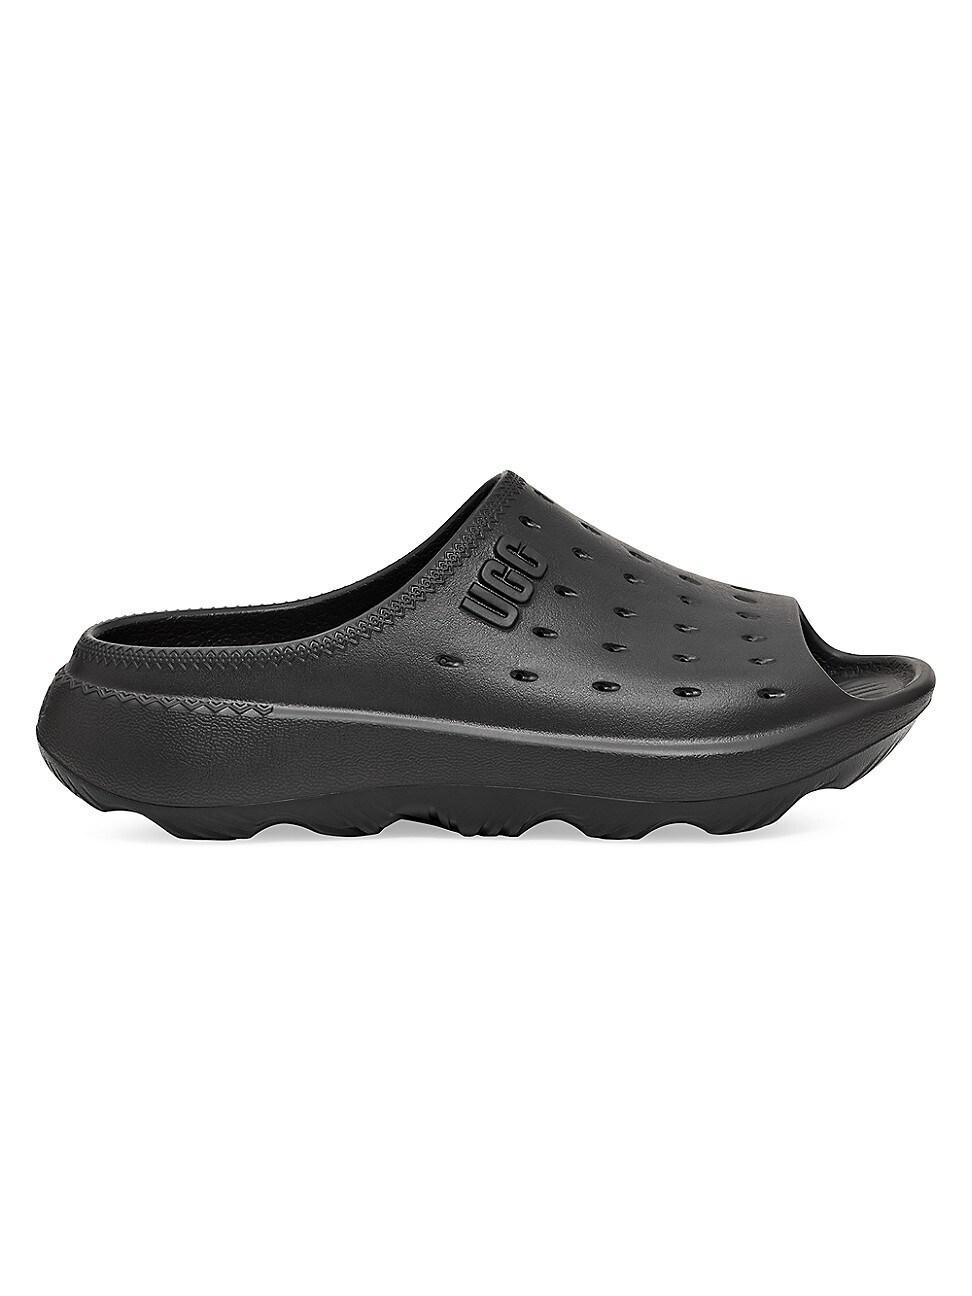 Mens Slide It Logo Sandals Product Image